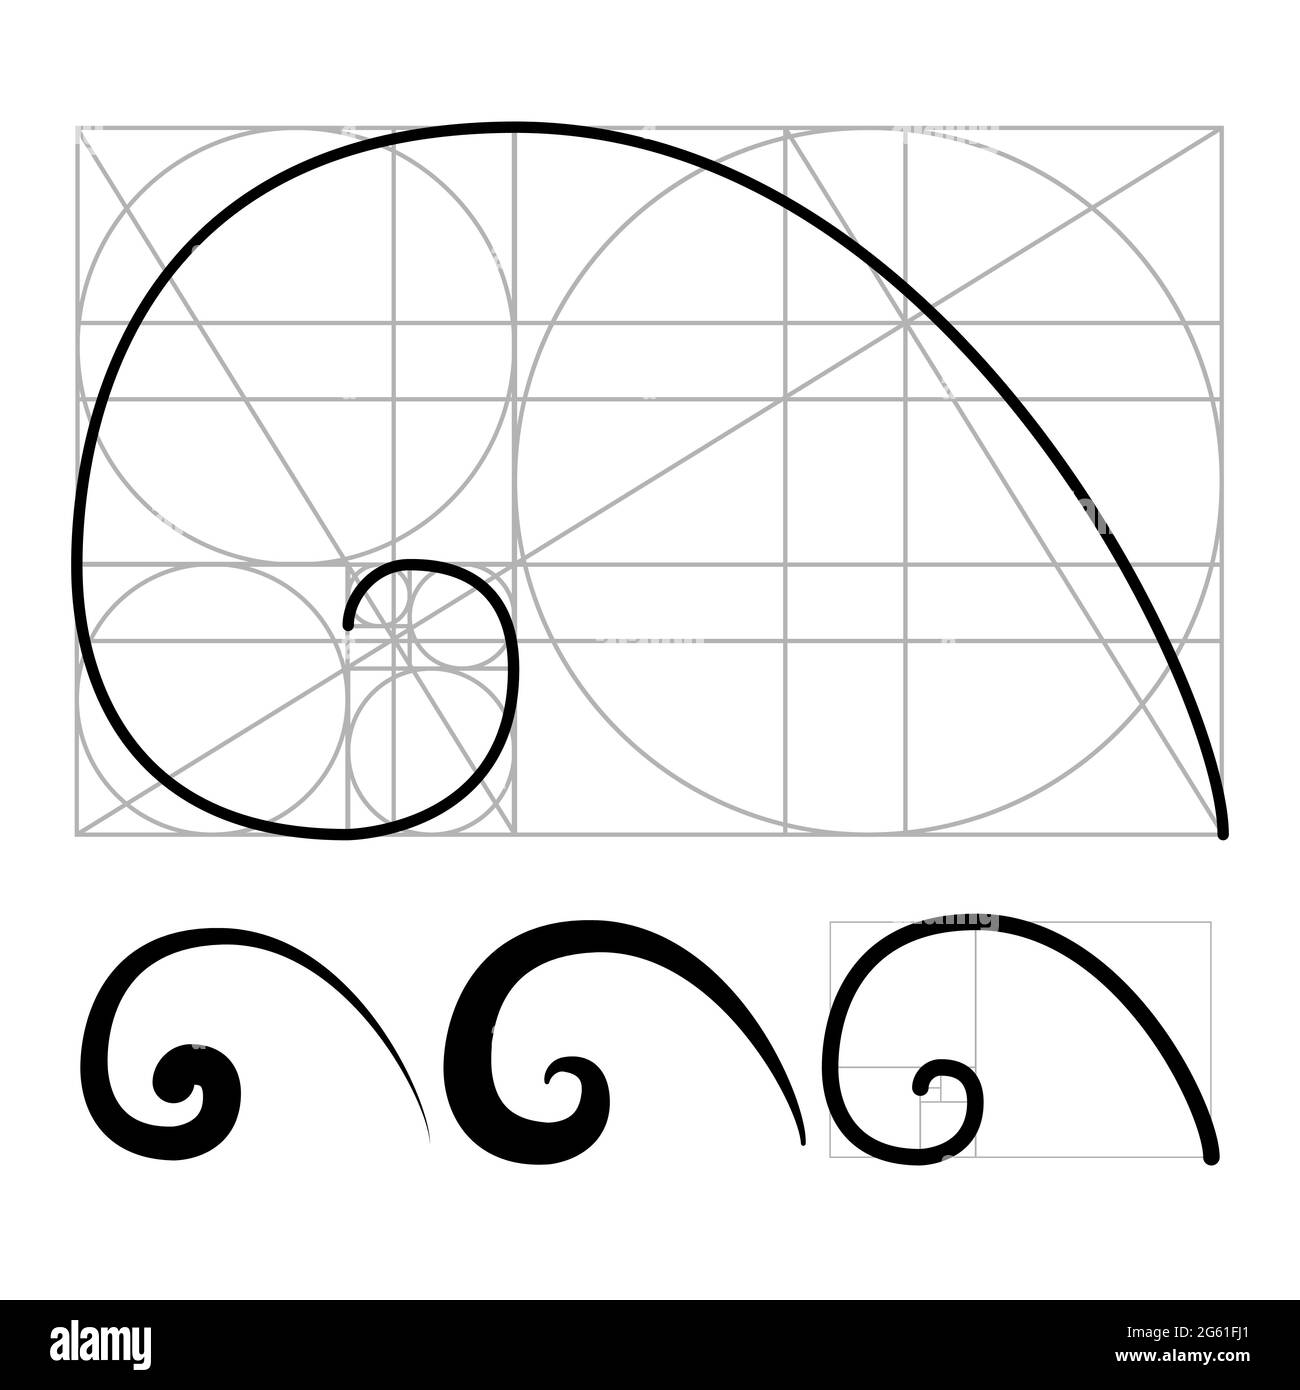 Ensemble De Fibonacci Golden Ratio Spirale Pour Les Logos Et Les